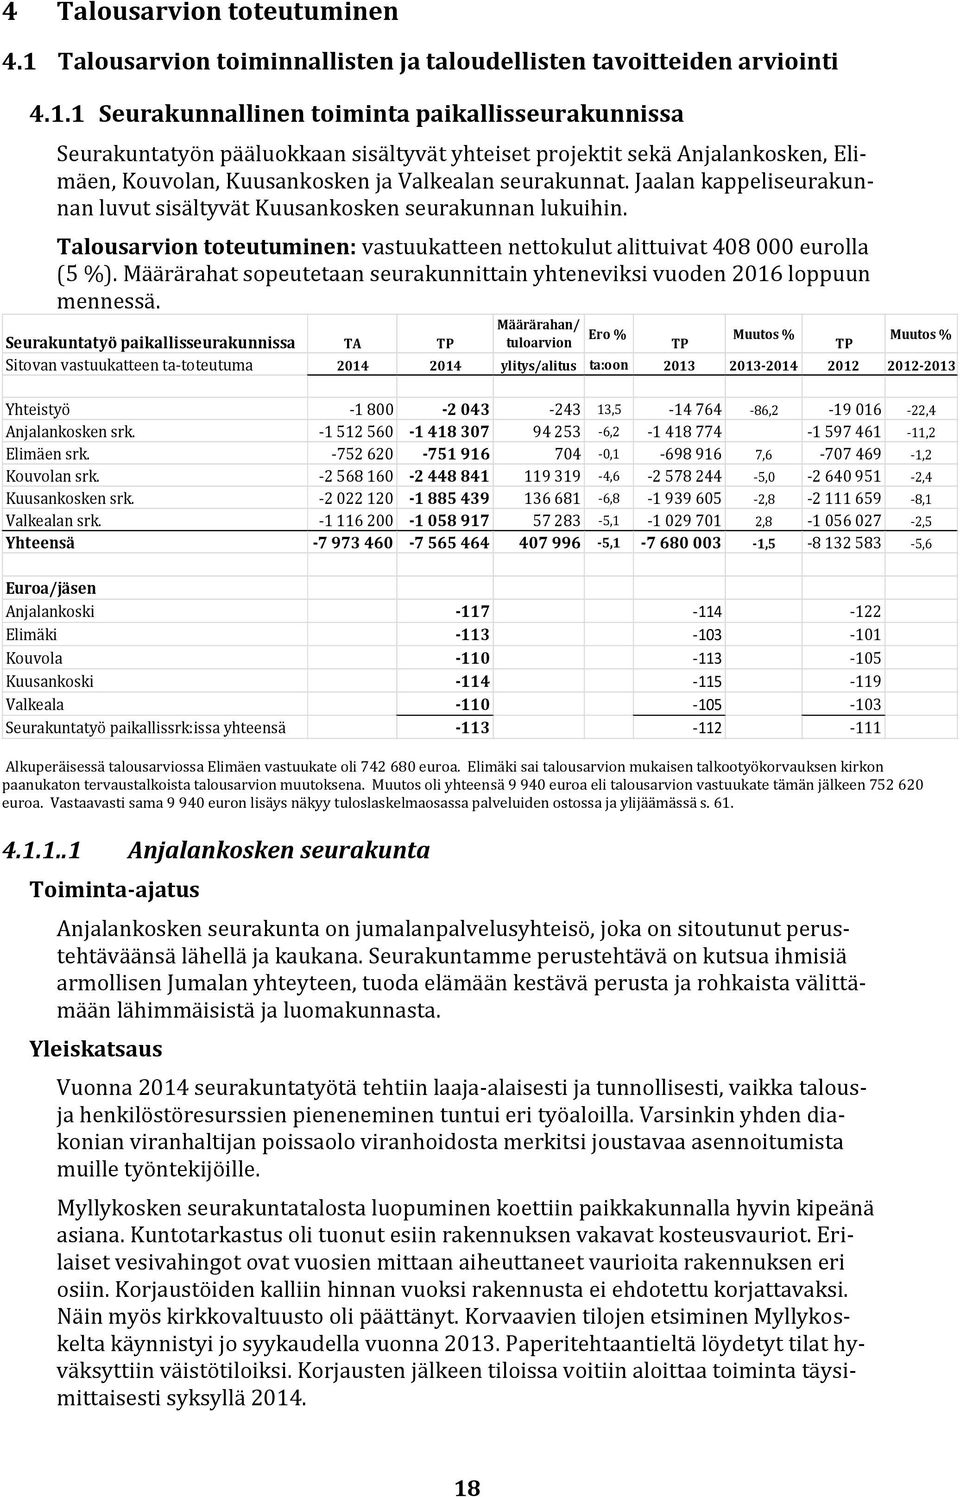 1 Seurakunnallinen toiminta paikallisseurakunnissa Seurakuntatyön pääluokkaan sisältyvät yhteiset projektit sekä Anjalankosken, Elimäen, Kouvolan, Kuusankosken ja Valkealan seurakunnat.